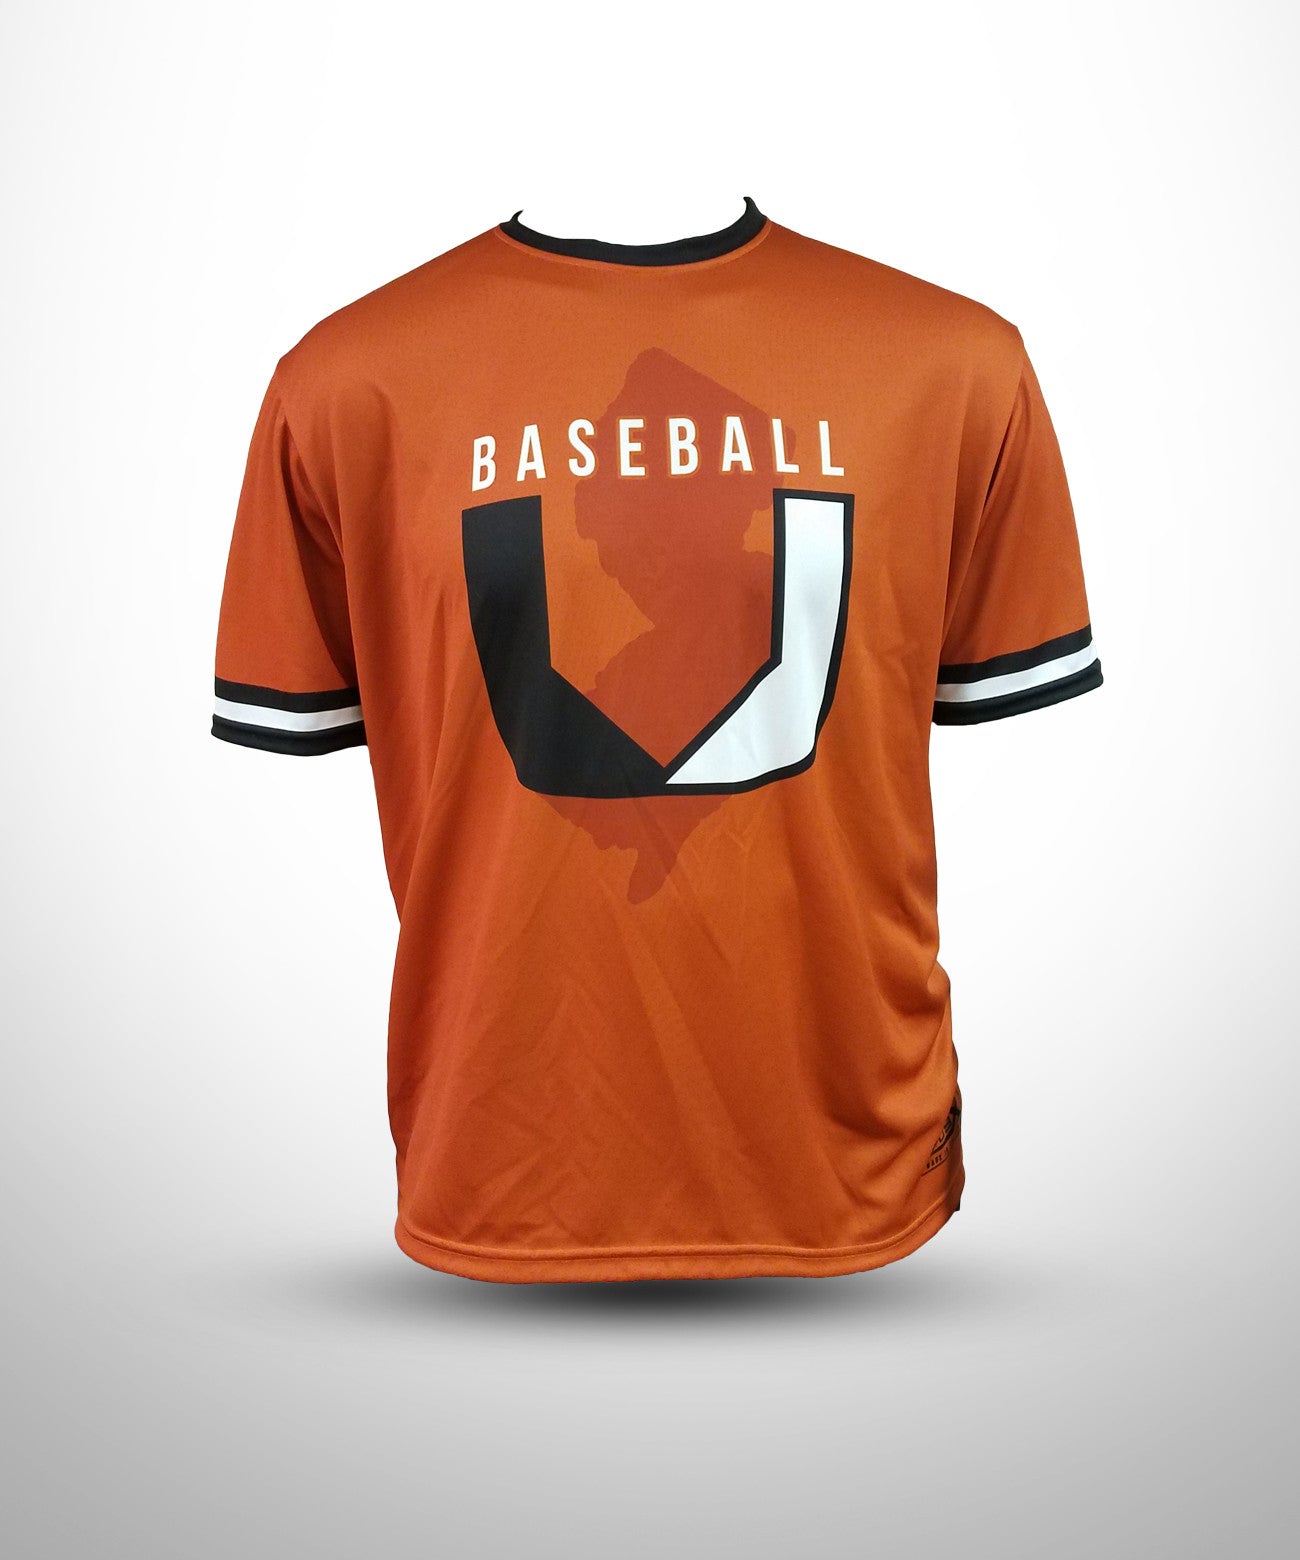 Evo9x BASEBALL U Full Dye Sublimated Short Sleeve Jersey Orange ...